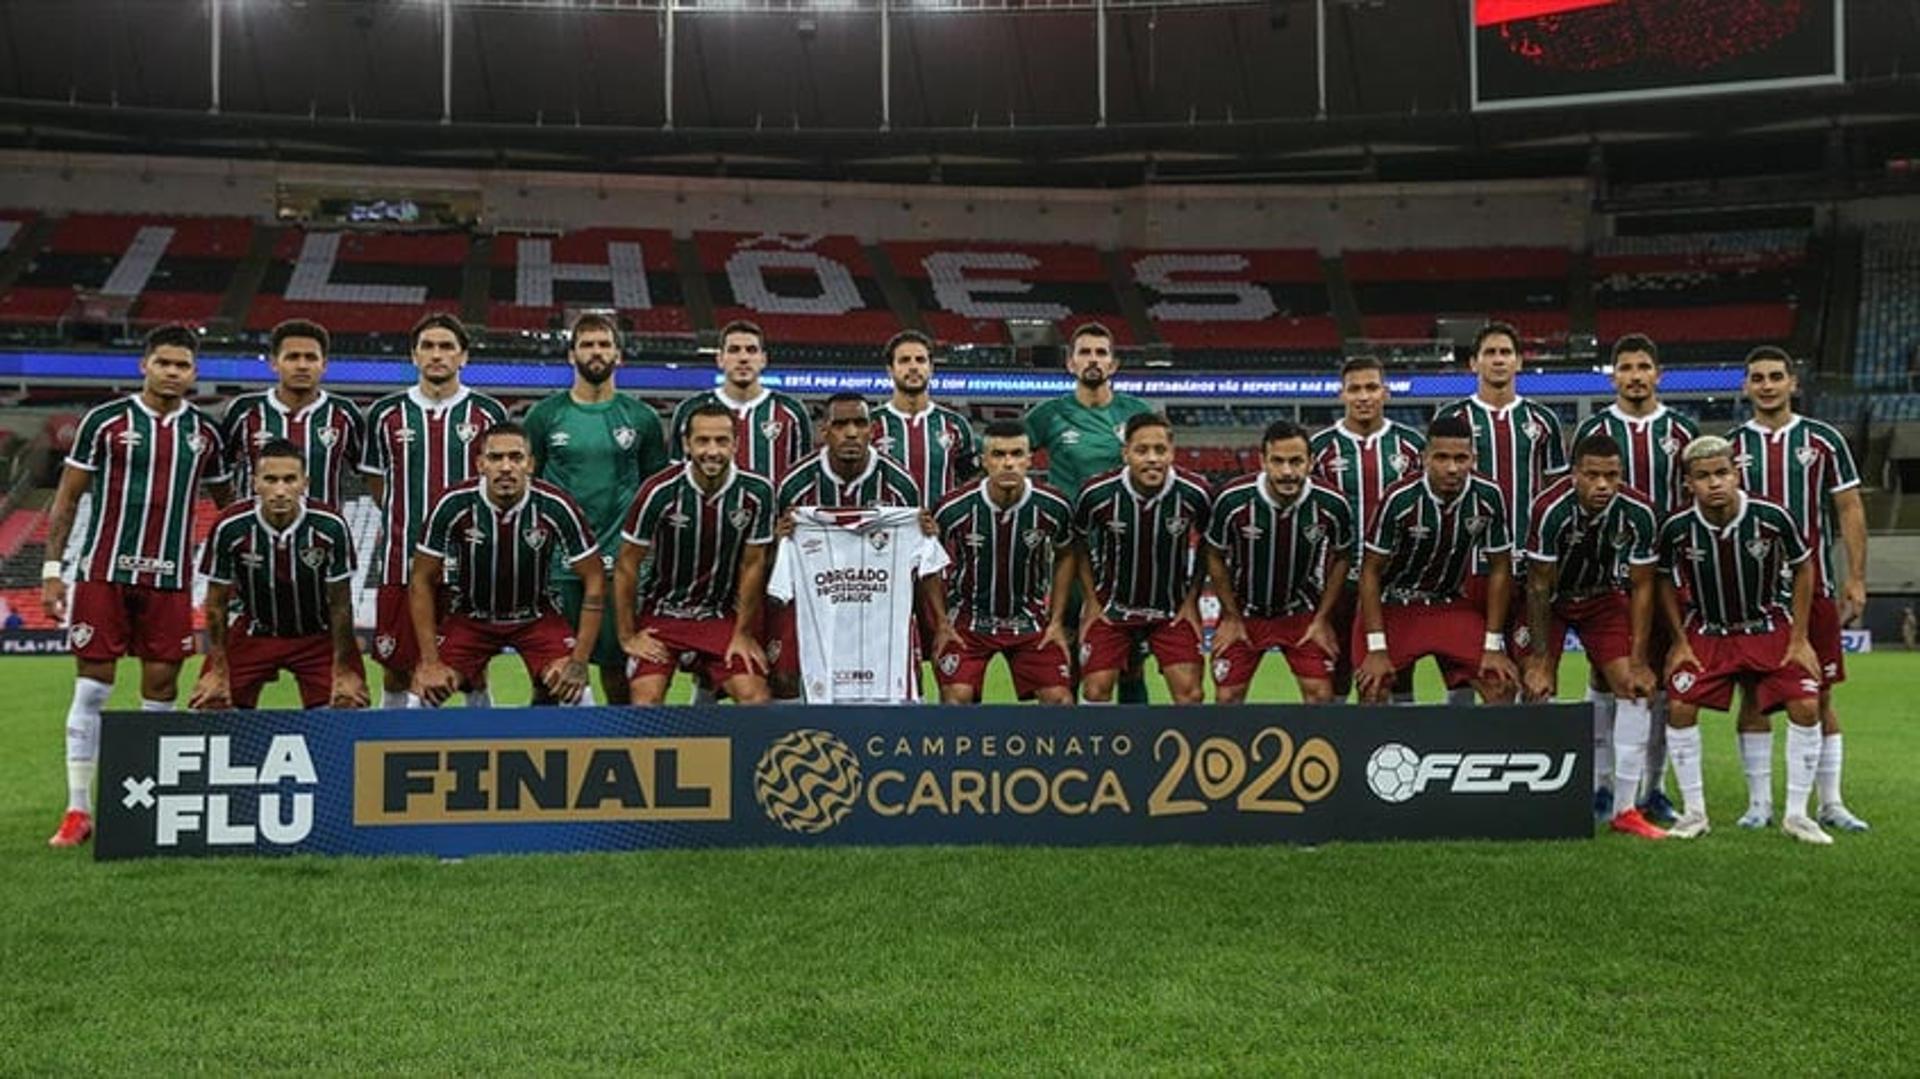 Fluminense Campeonato Carioca 2020